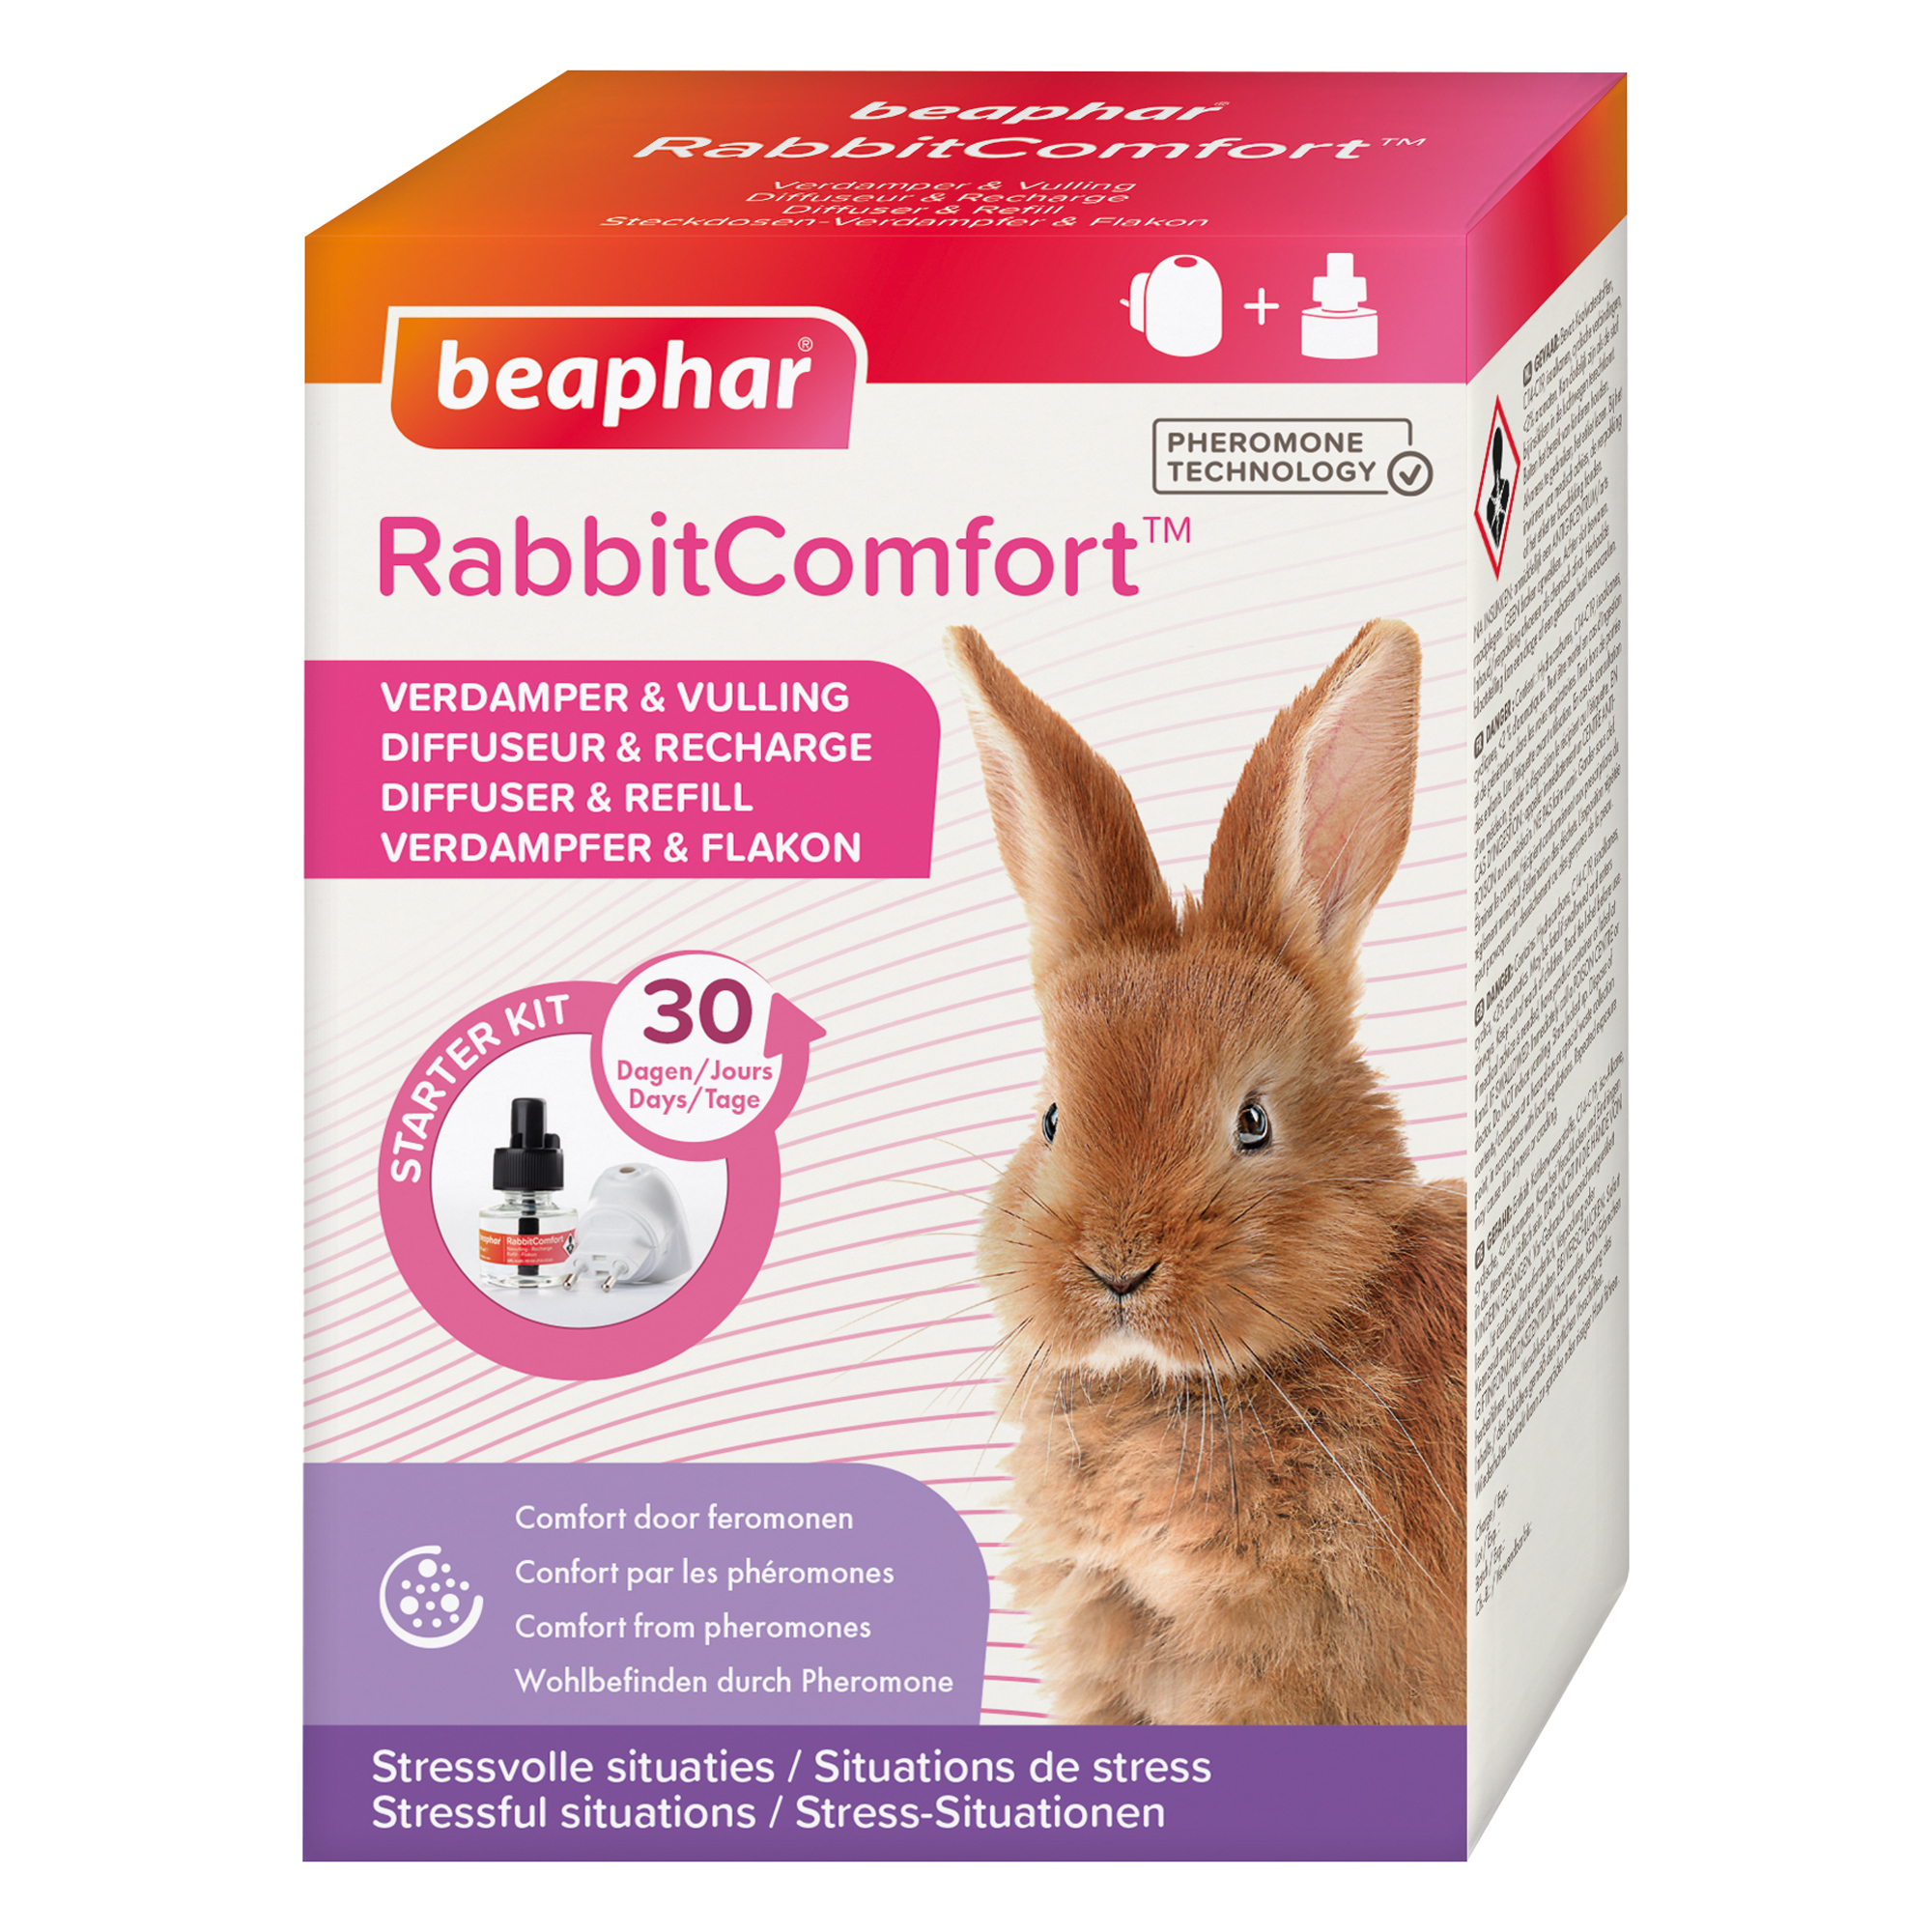 RabbitComfort Diffusore e ricarica di feromoni calmanti per conigli e giovani conigli